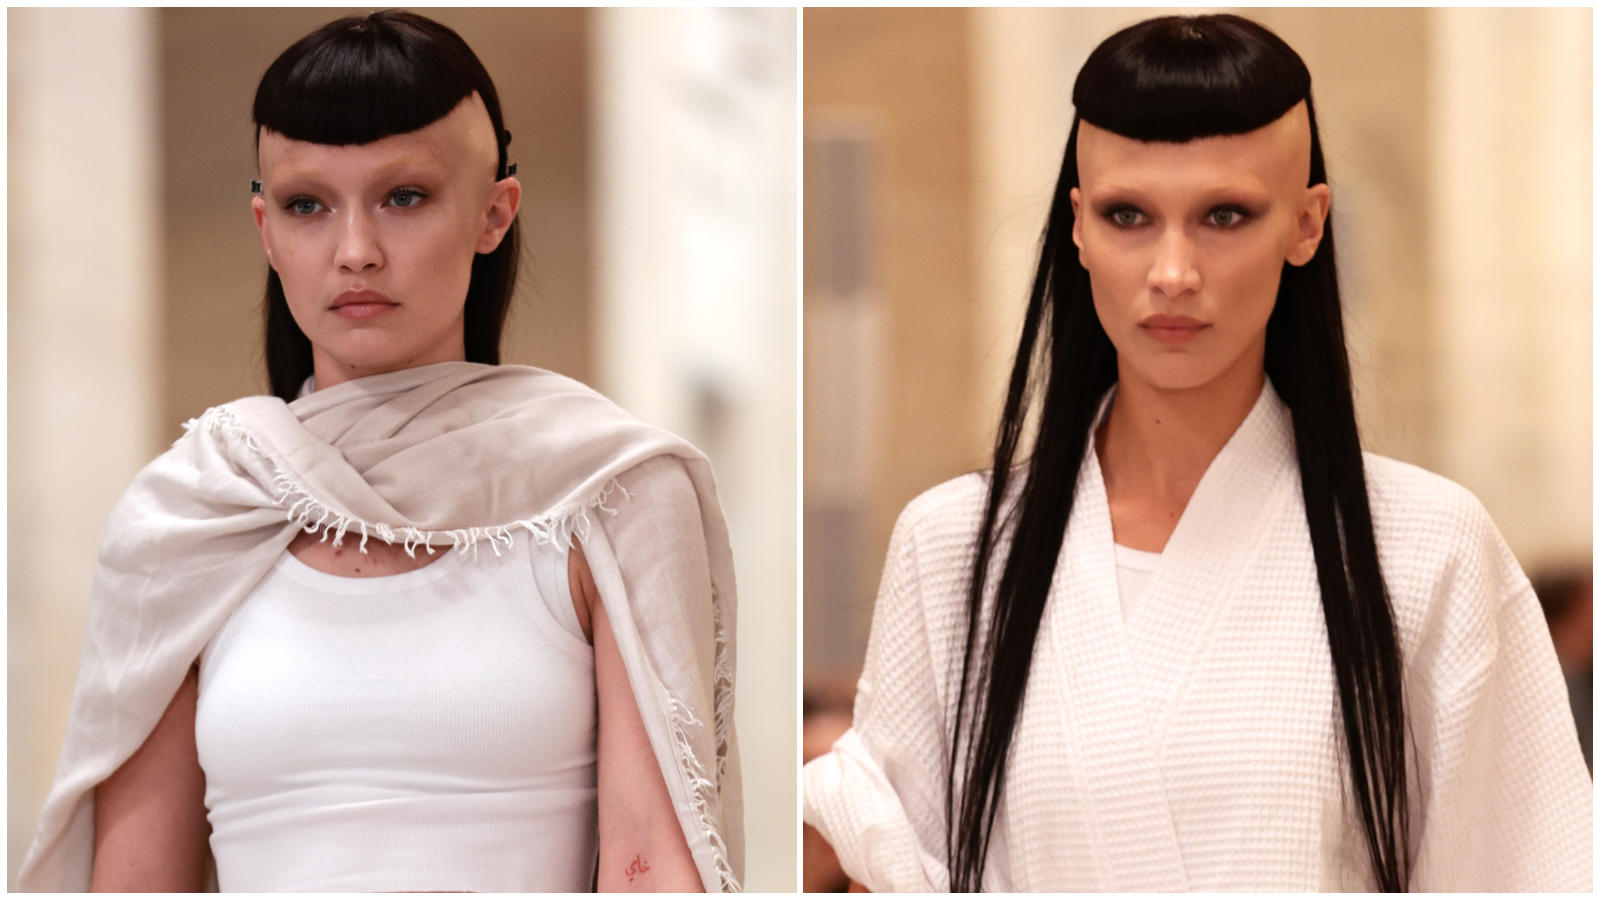 Gigi und Bella Hadid sind bei der Herbstshow von Fashion-Designer Marc Jacobs kaum wiederzuerkennen.